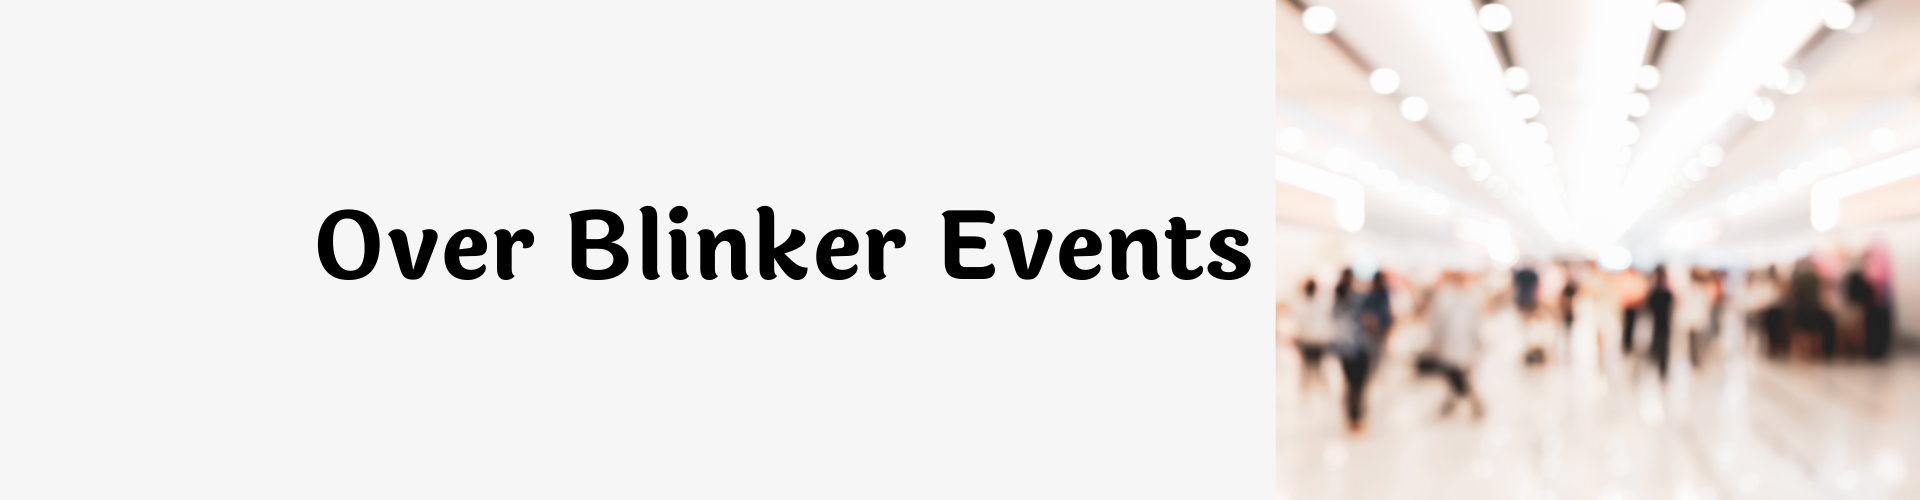 over-blinker-events-header-blinker-events-5